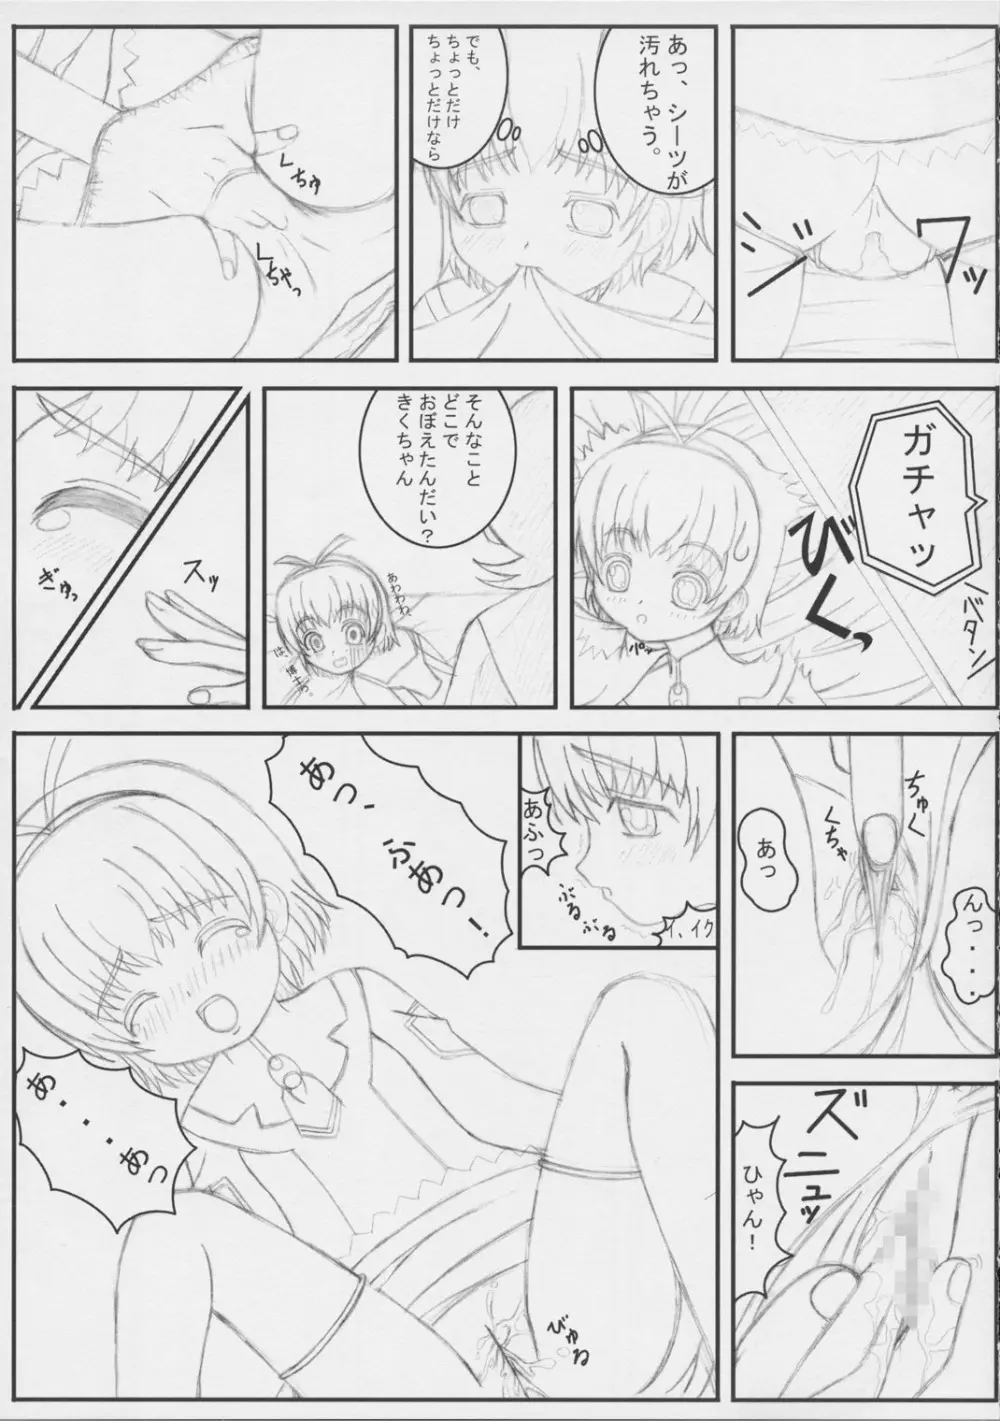 Kiku 8 Go! 12ページ